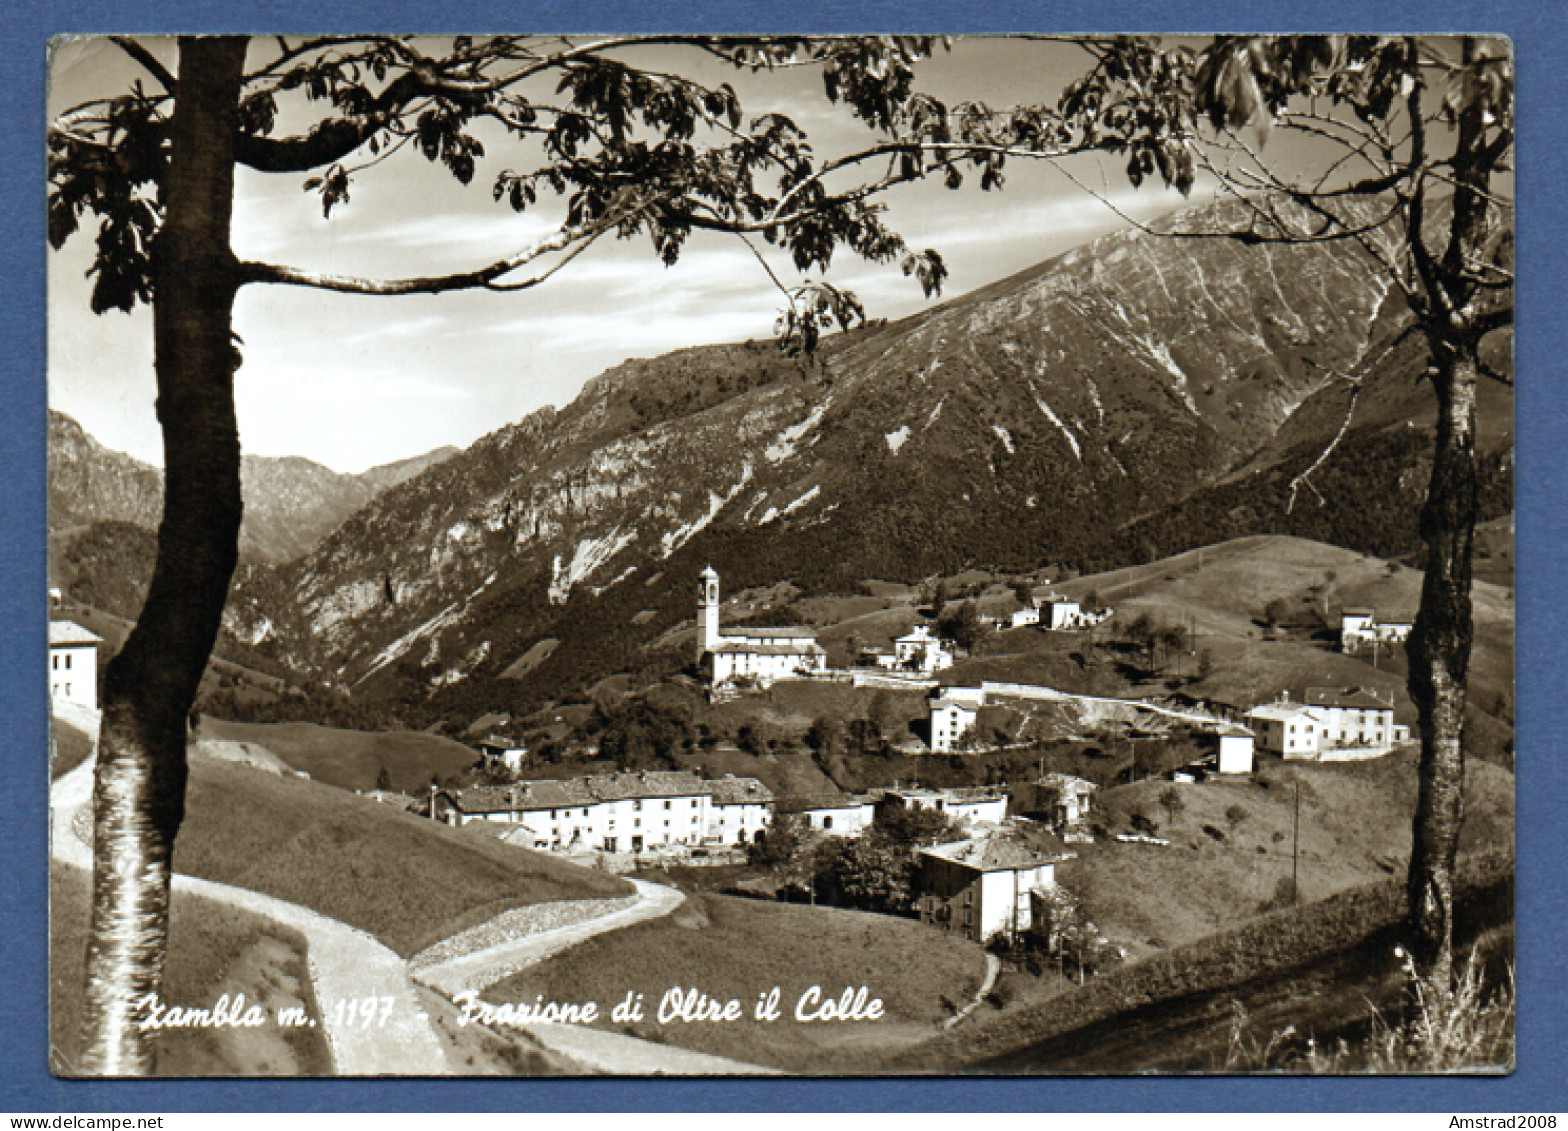 1954 - ZAMBLA - FRAZIONE DI OLTRE IL COLLE -  ITALIE - Bergamo